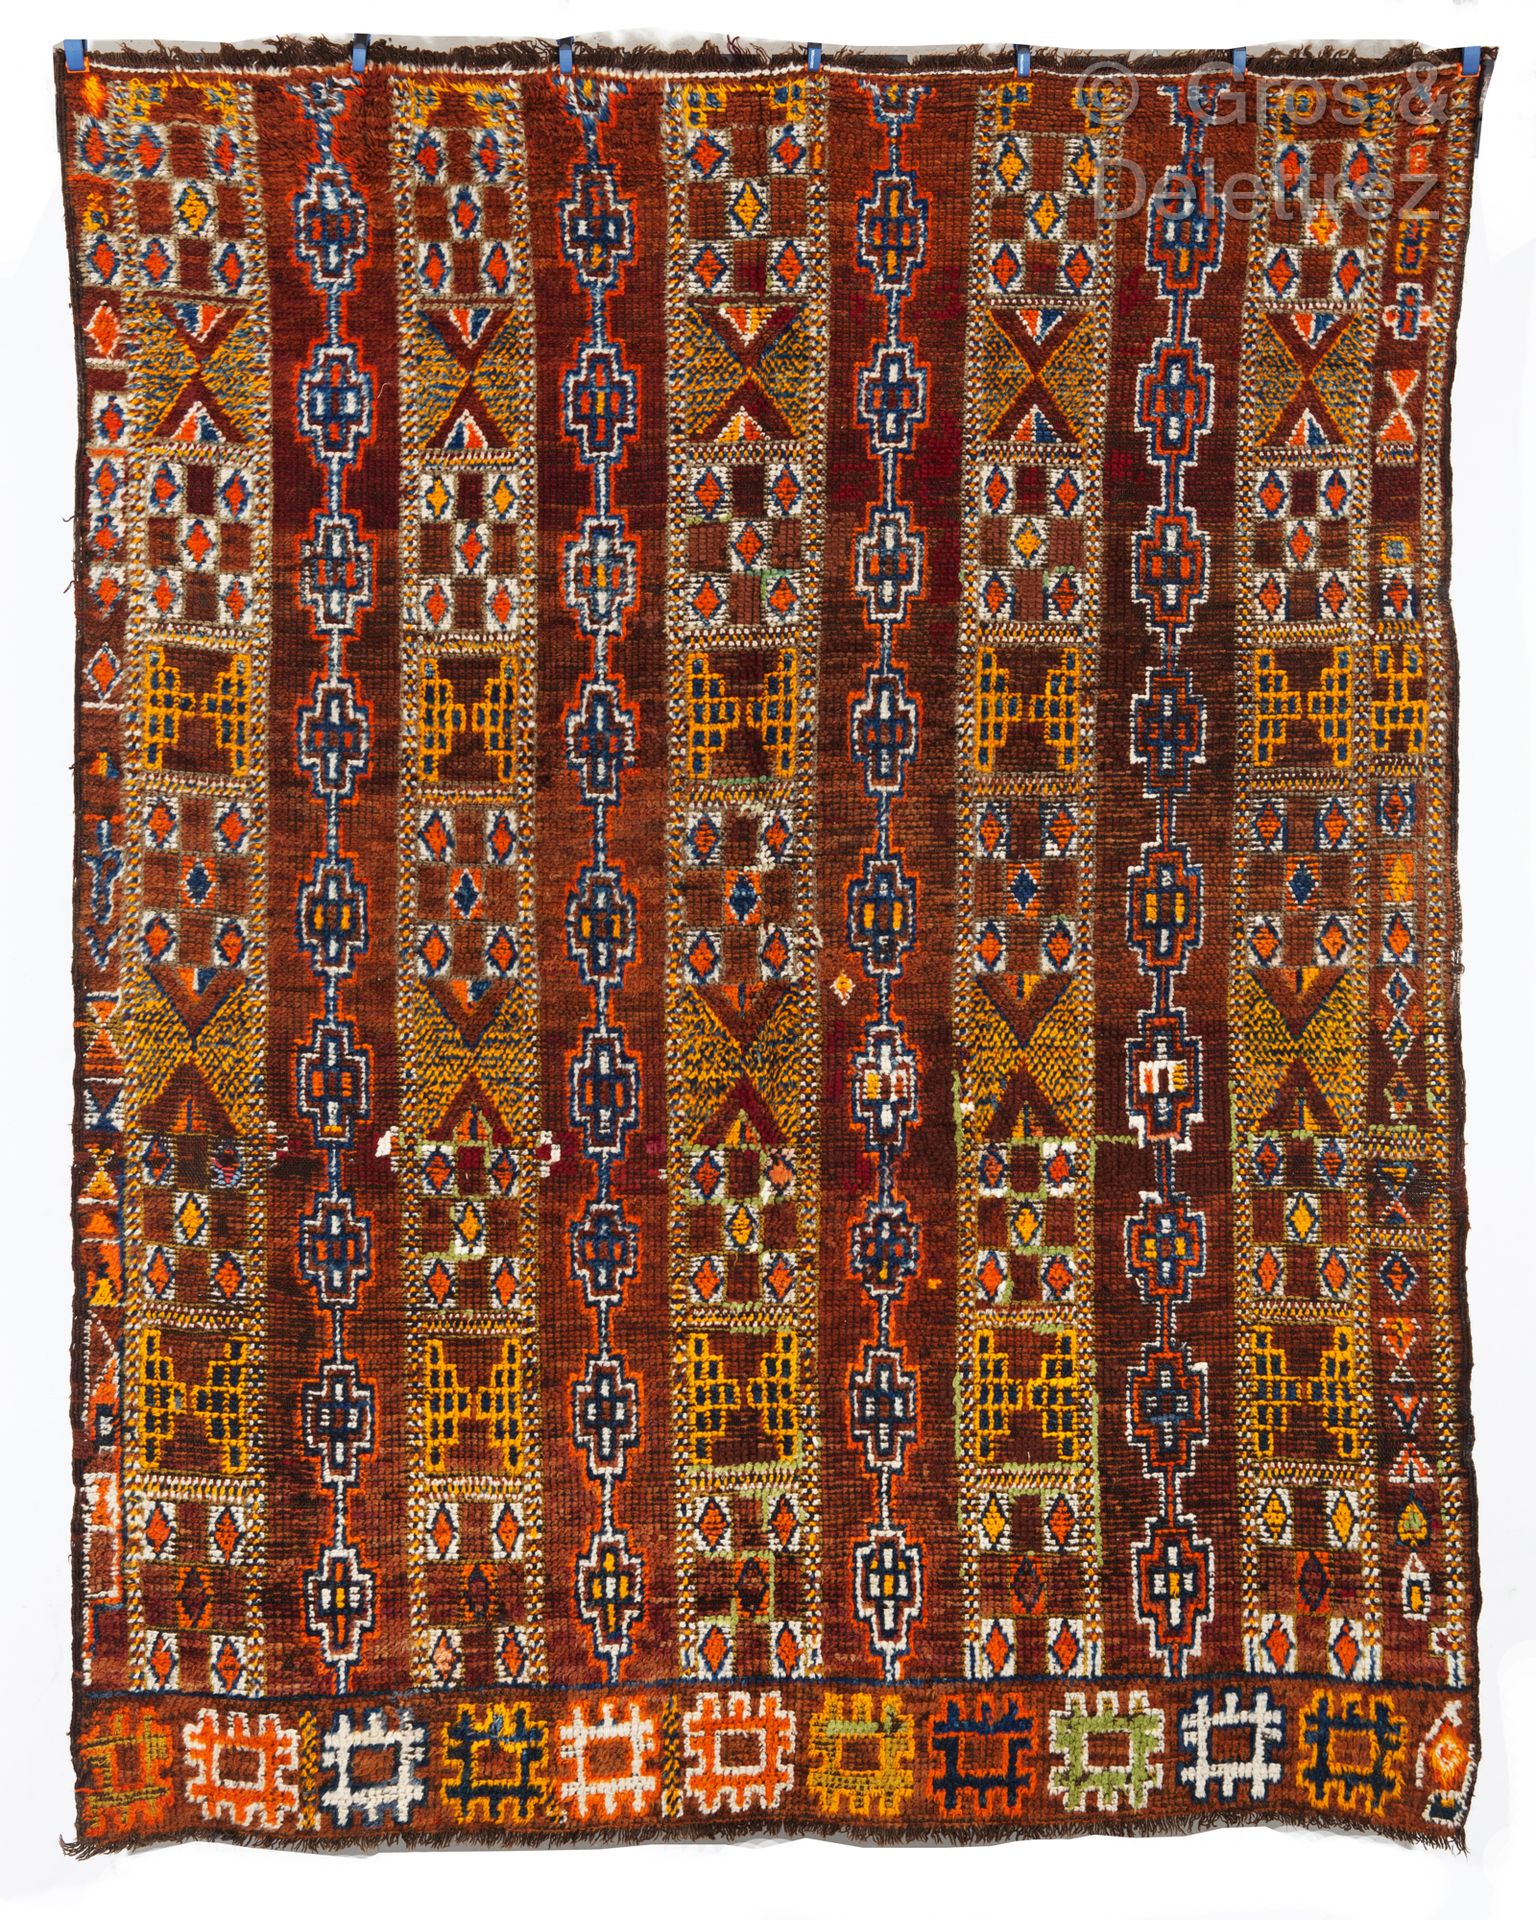 Null Ein geknüpfter Teppich Zaïane, Ethnie der Berber, Marokko. 

Ein Zaïane-gek&hellip;